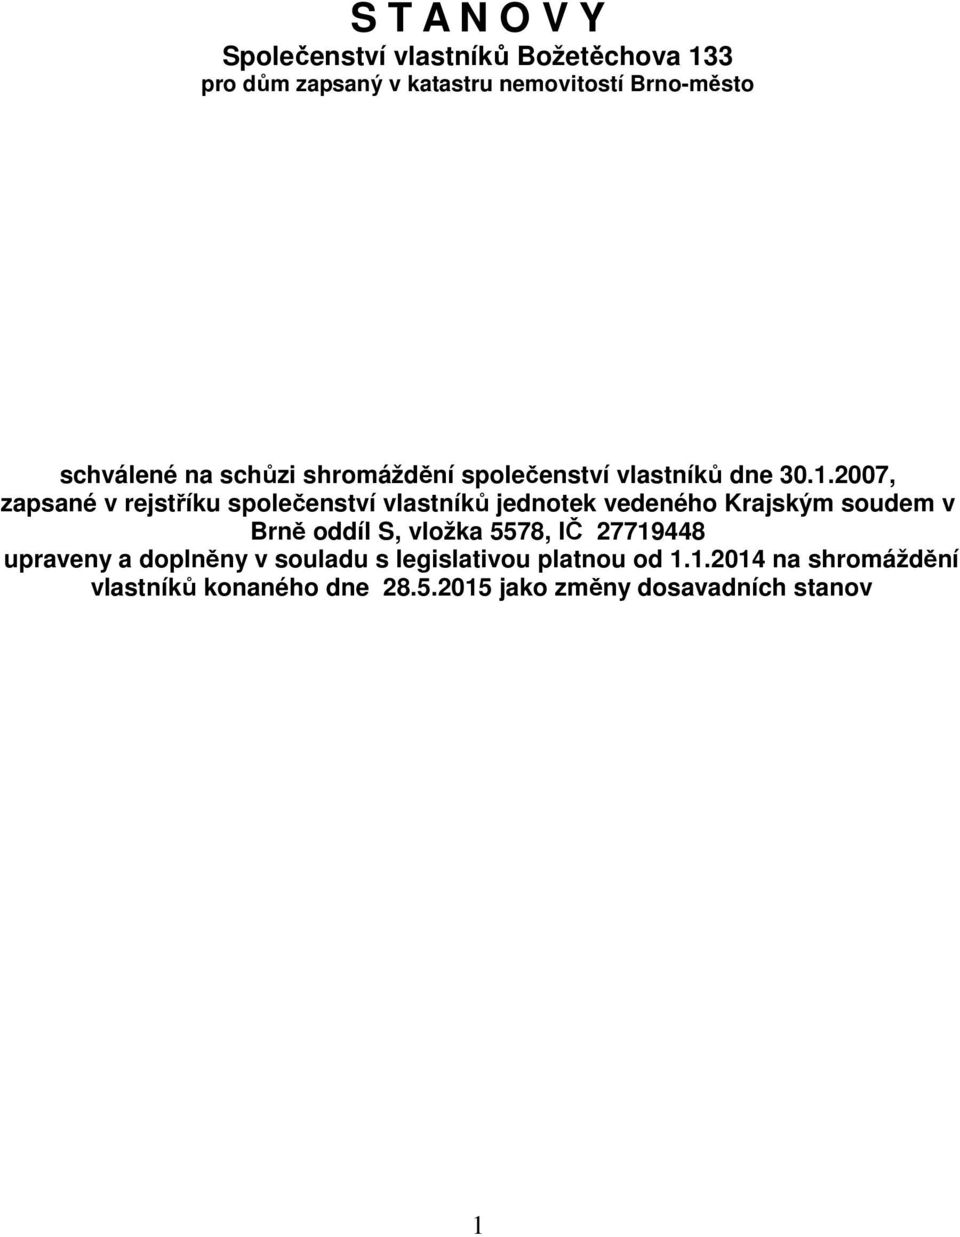 2007, zapsané v rejstříku společenství vlastníků jednotek vedeného Krajským soudem v Brně oddíl S, vložka